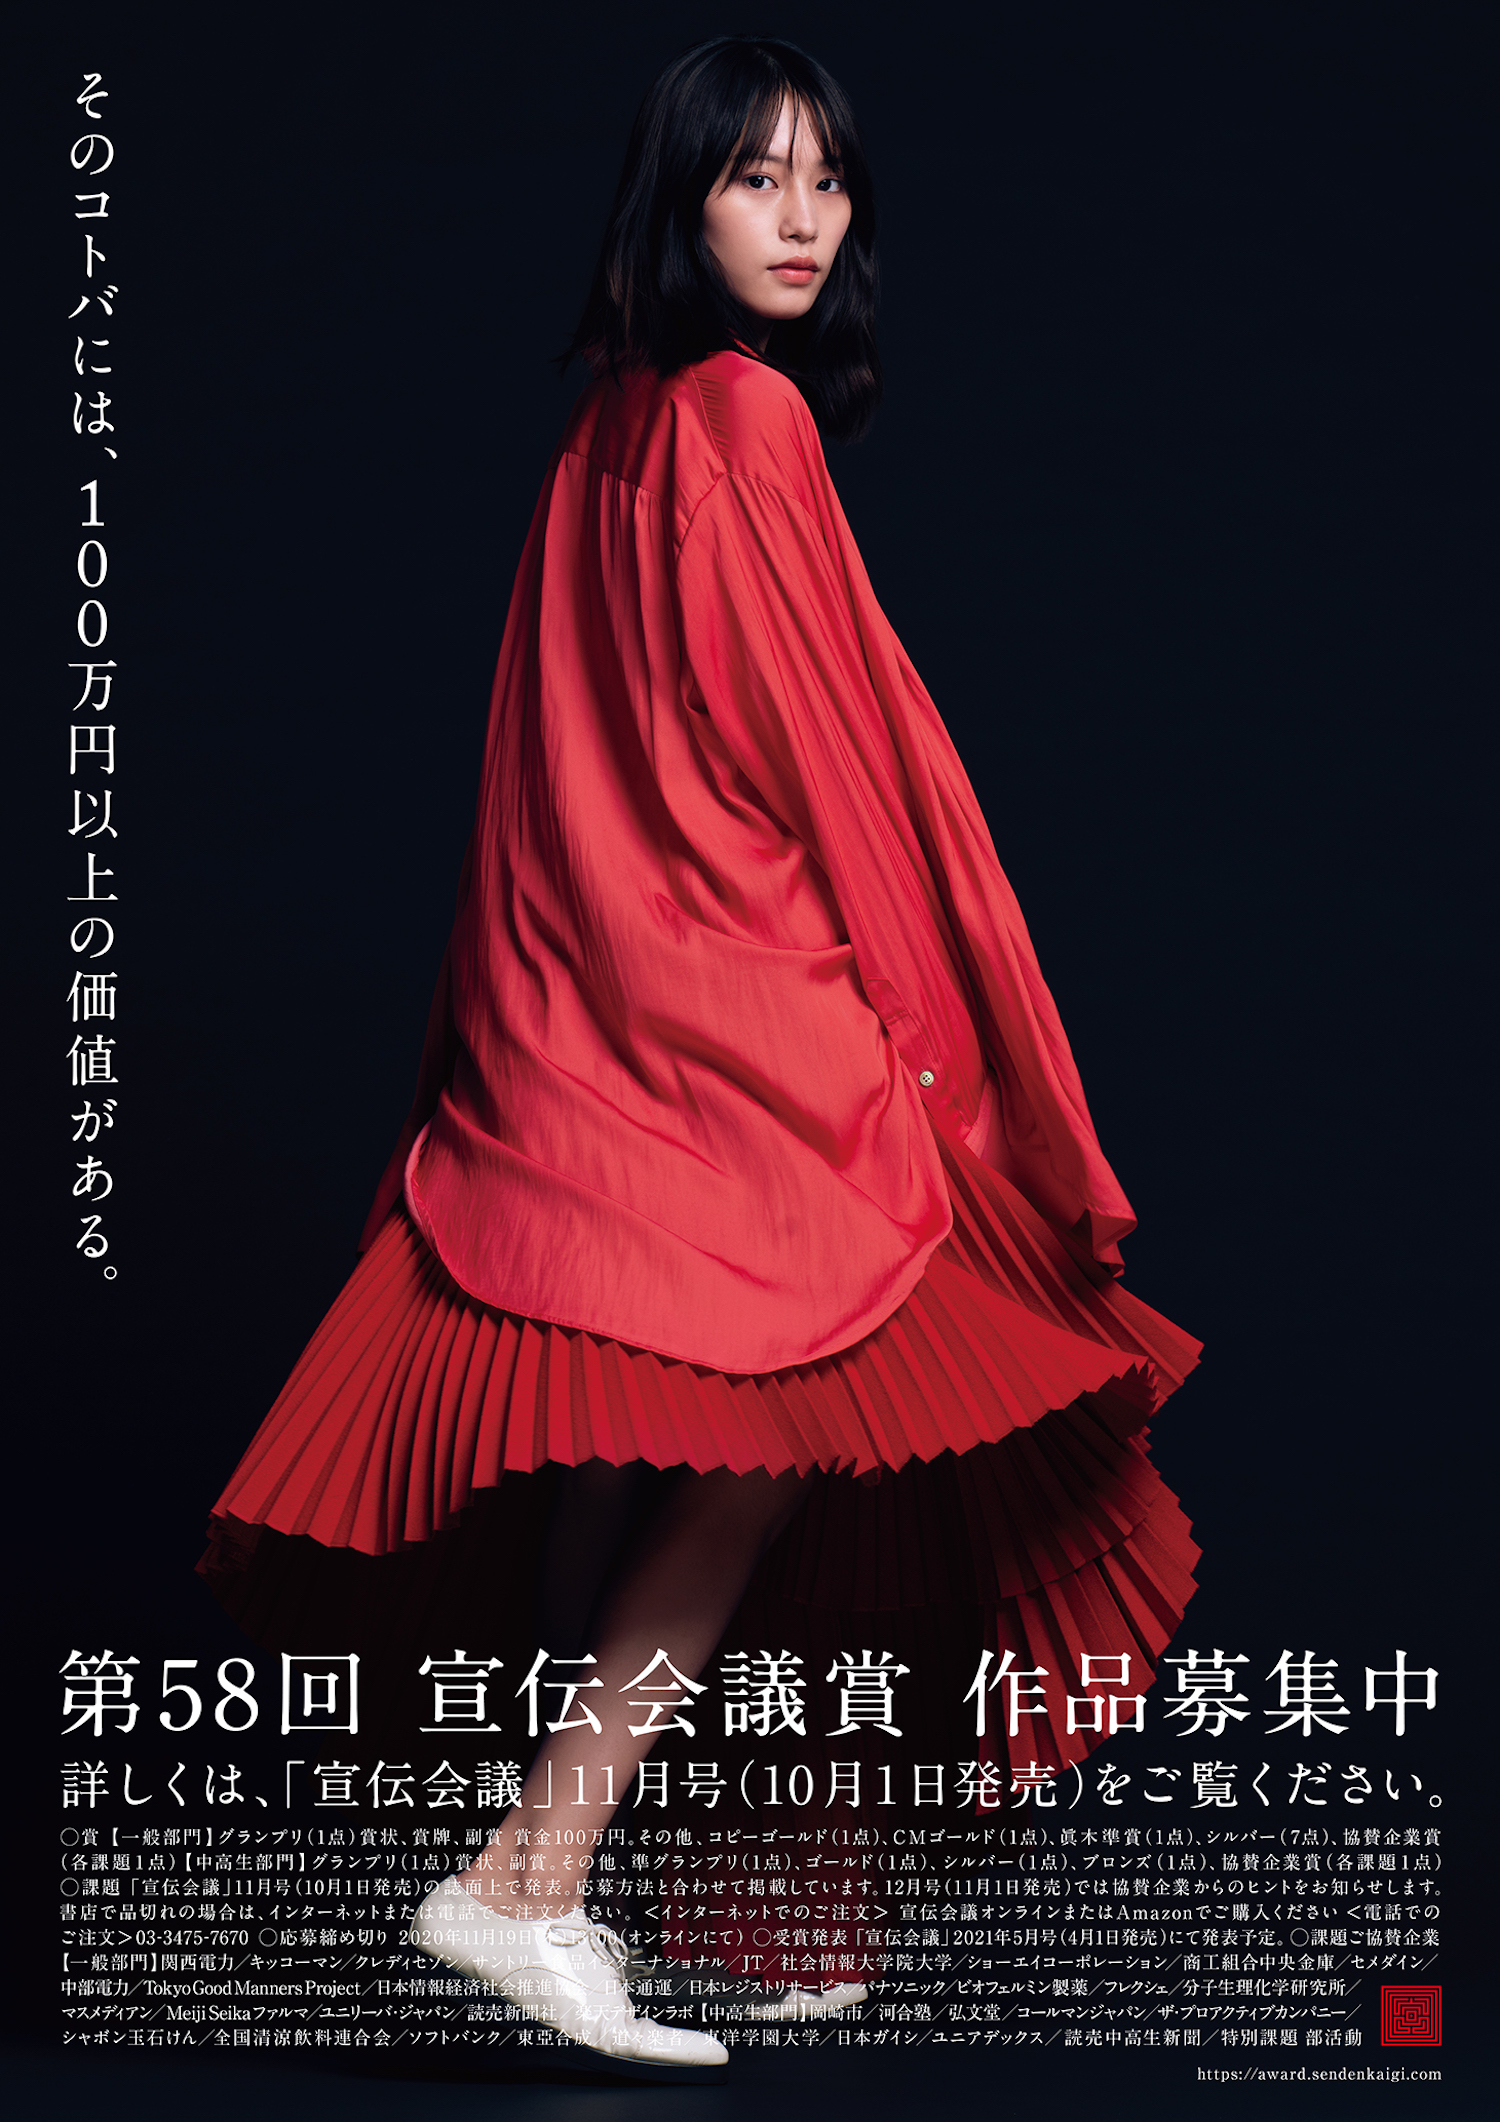 女優でモデルの南沙良、コピーライターの登竜門 日本最大級“広告コピー”のコンテスト 第 58 回「宣伝会議賞」の新イメージキャラクターに